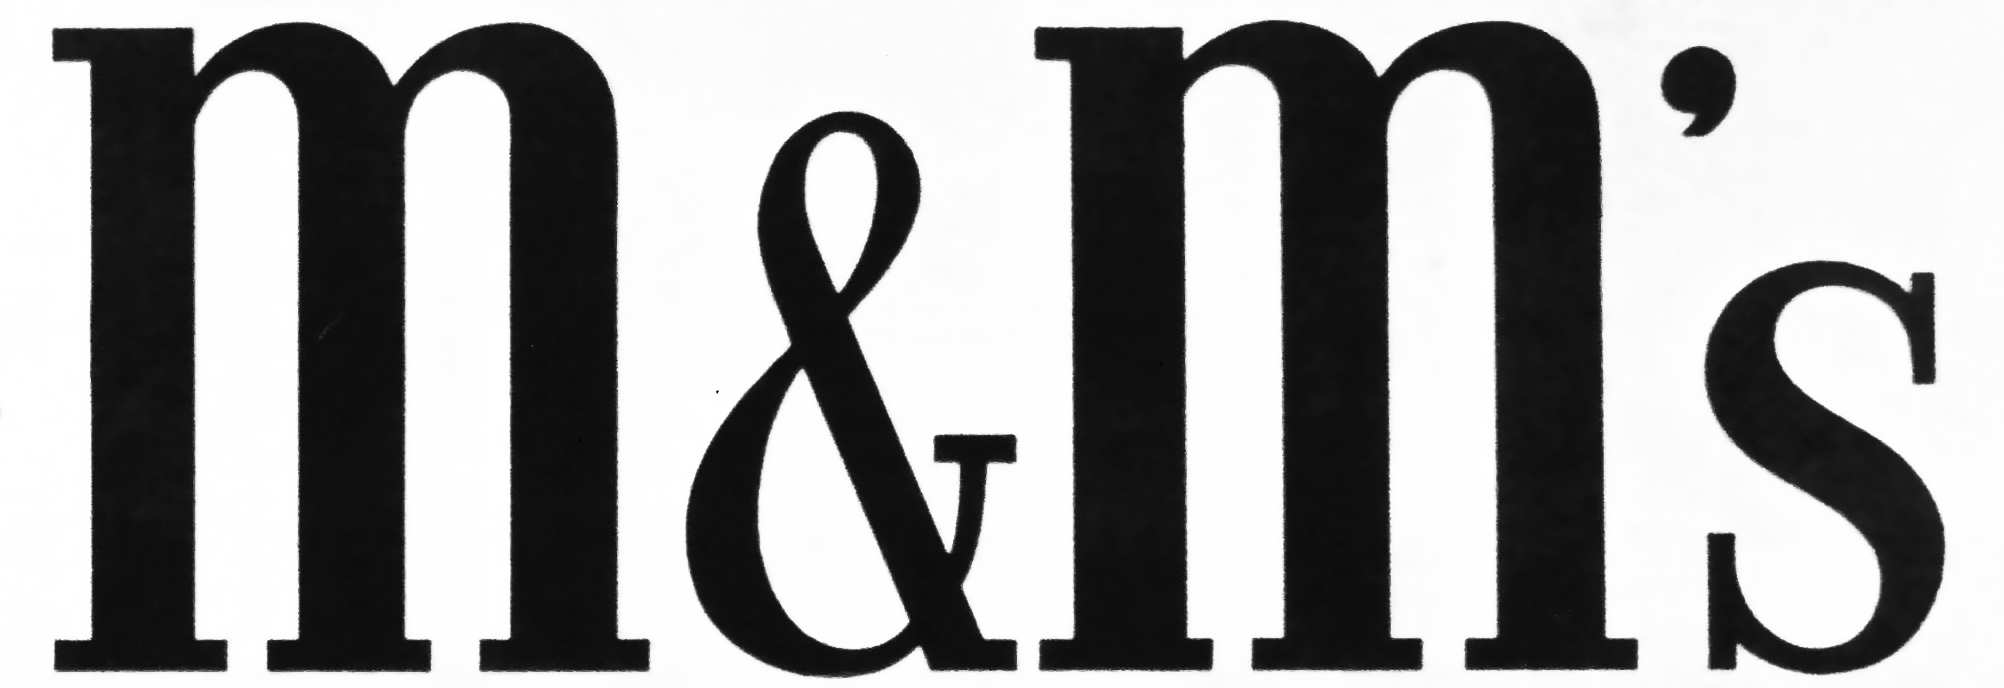 M&M Candy Logo - M&M's | Logopedia | FANDOM powered by Wikia